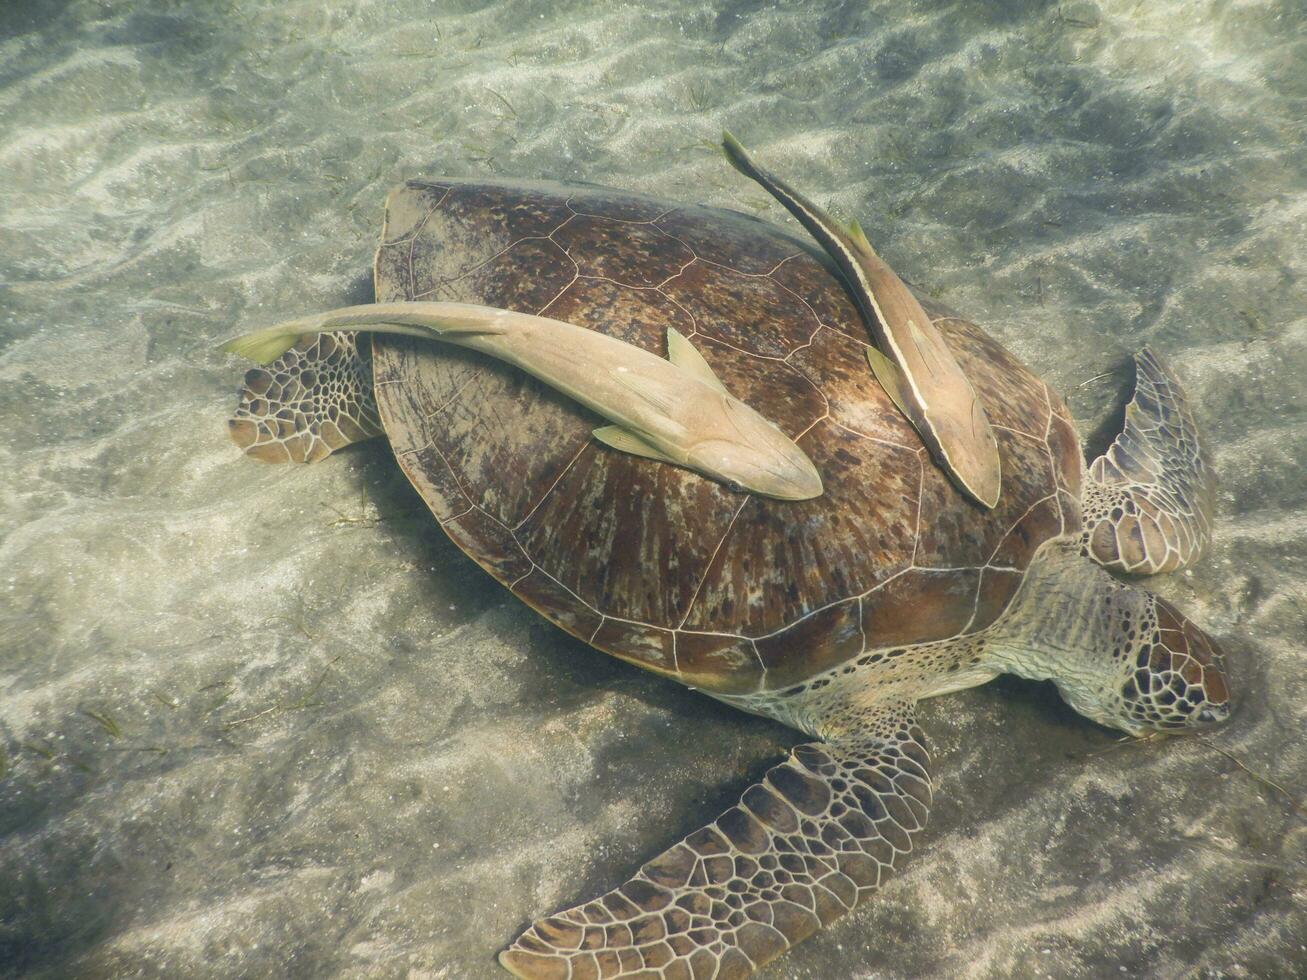 verde tortuga marina con dos peces piloto a el arenoso fondo del mar foto